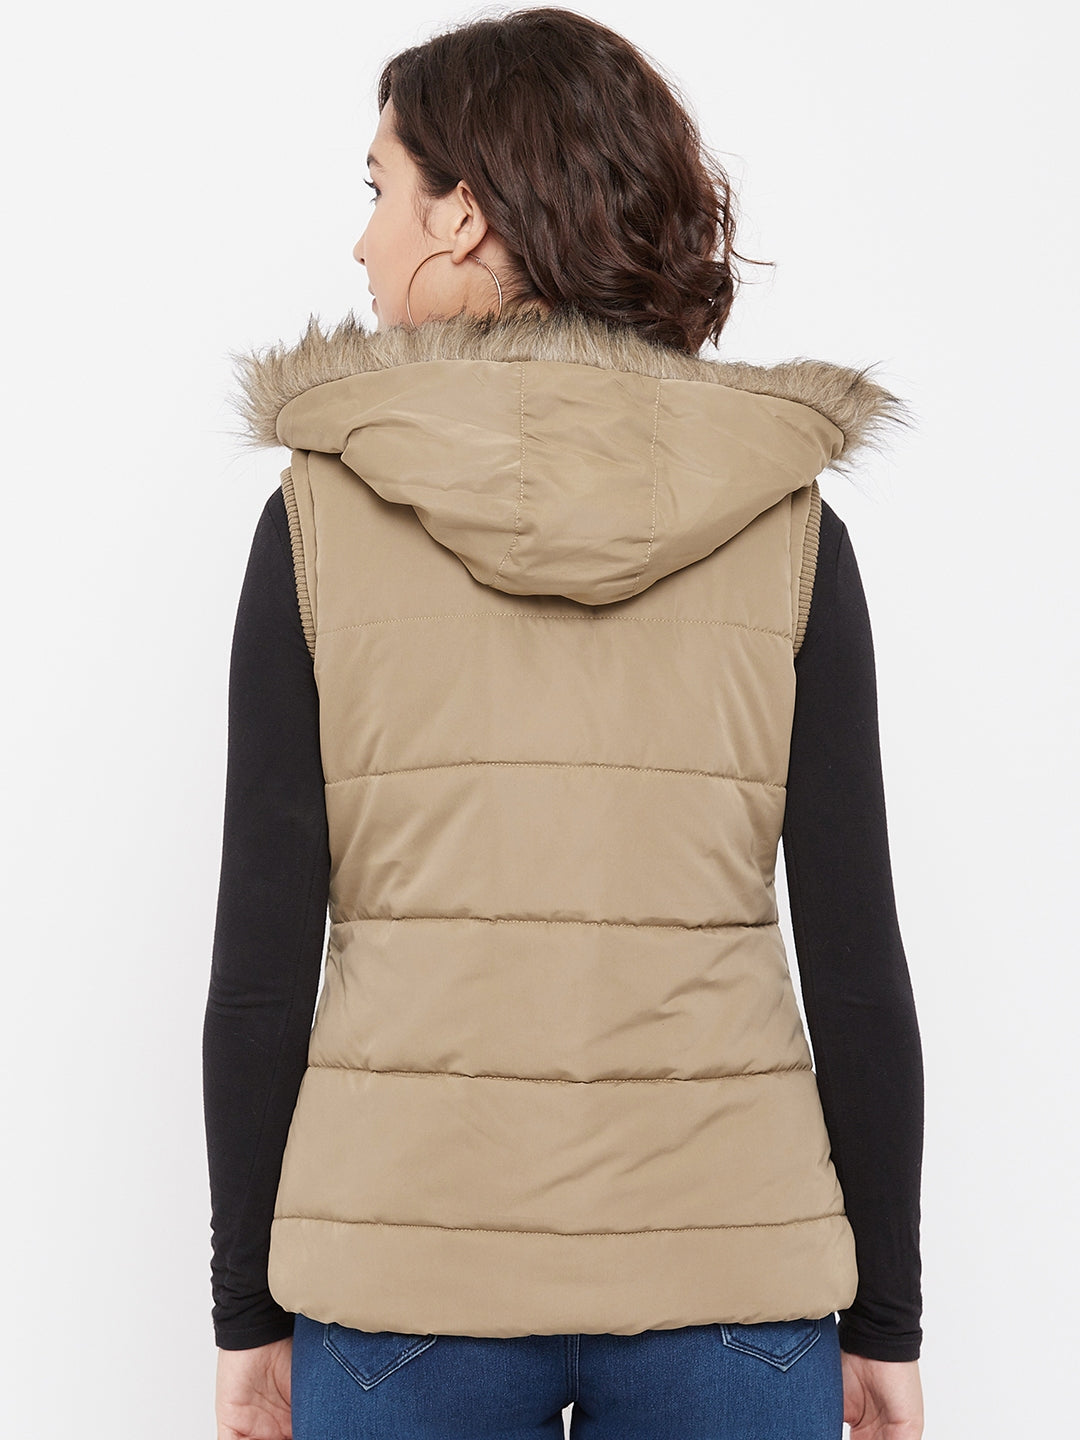 Beige Detachable Hood Jacket - Women Jackets